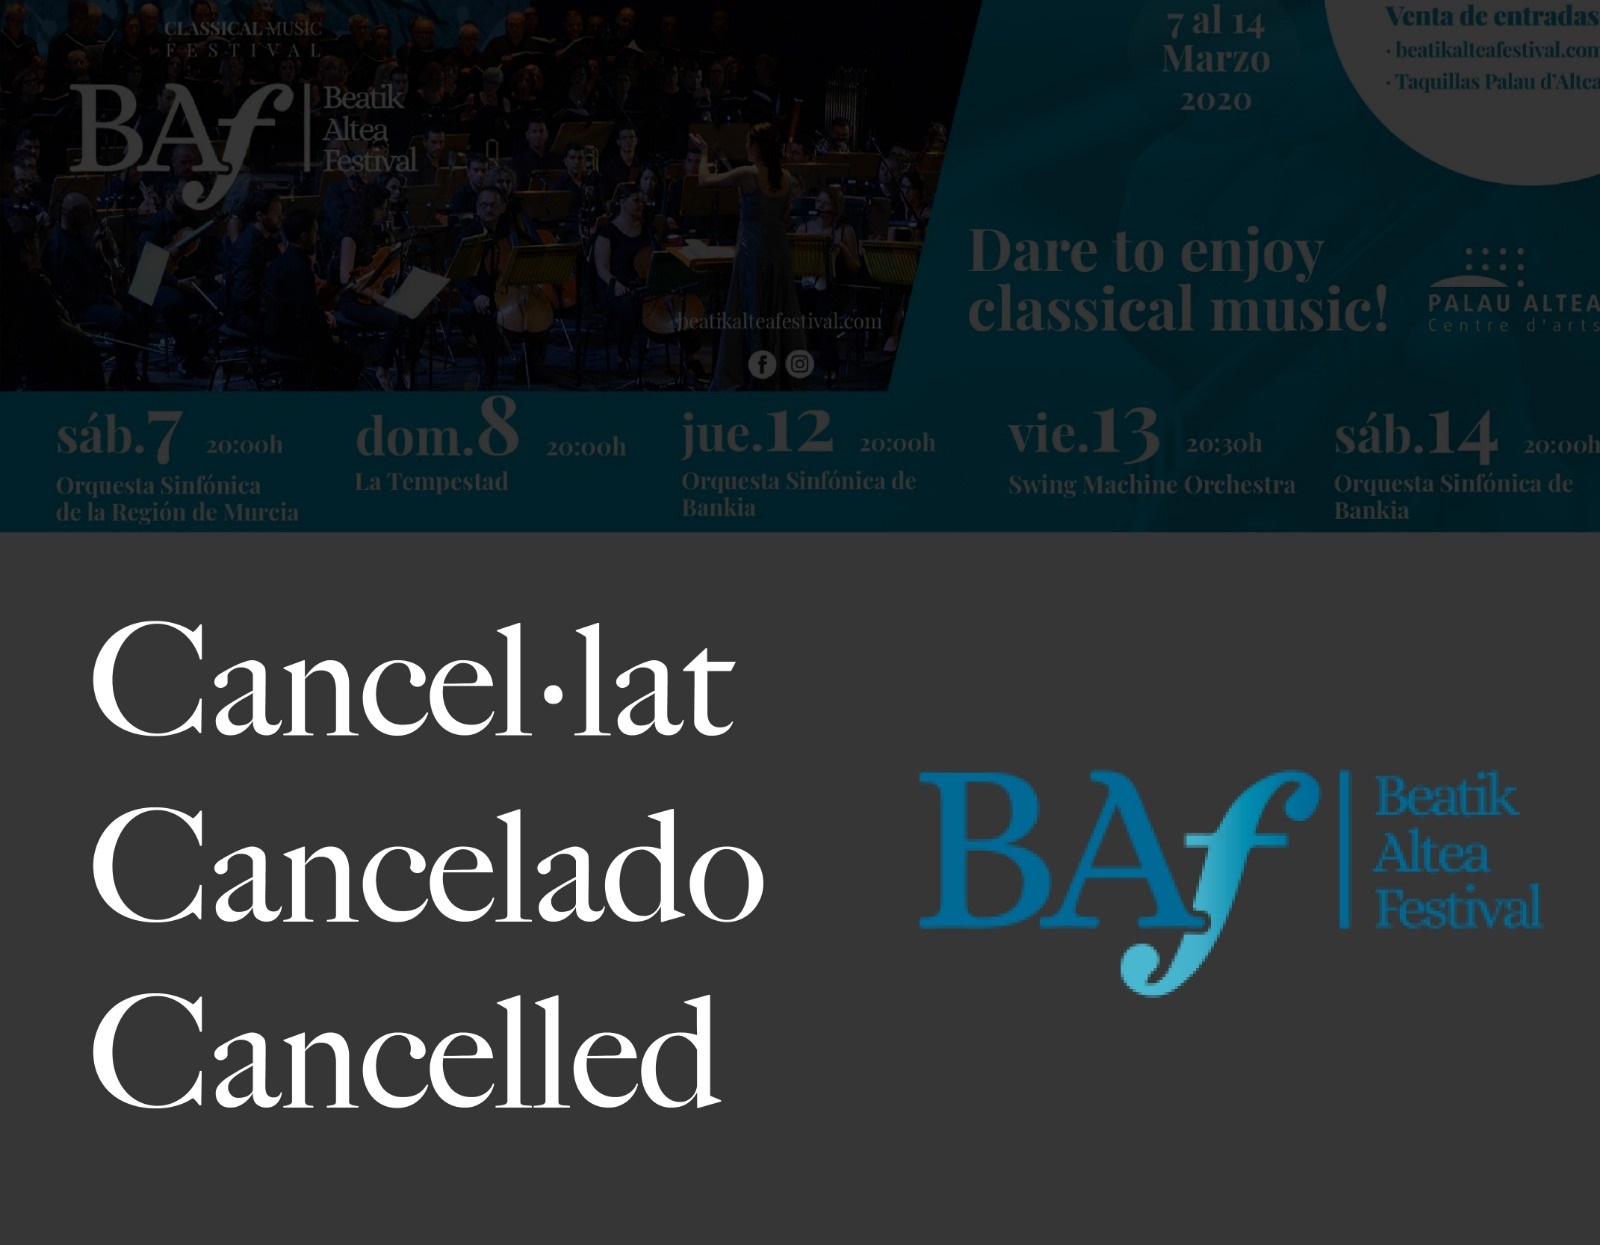 La concejalía de Cultura informa de la cancelación de las actuaciones del Beatik Altea Festival de los días 12, 13 y 14 de marzo